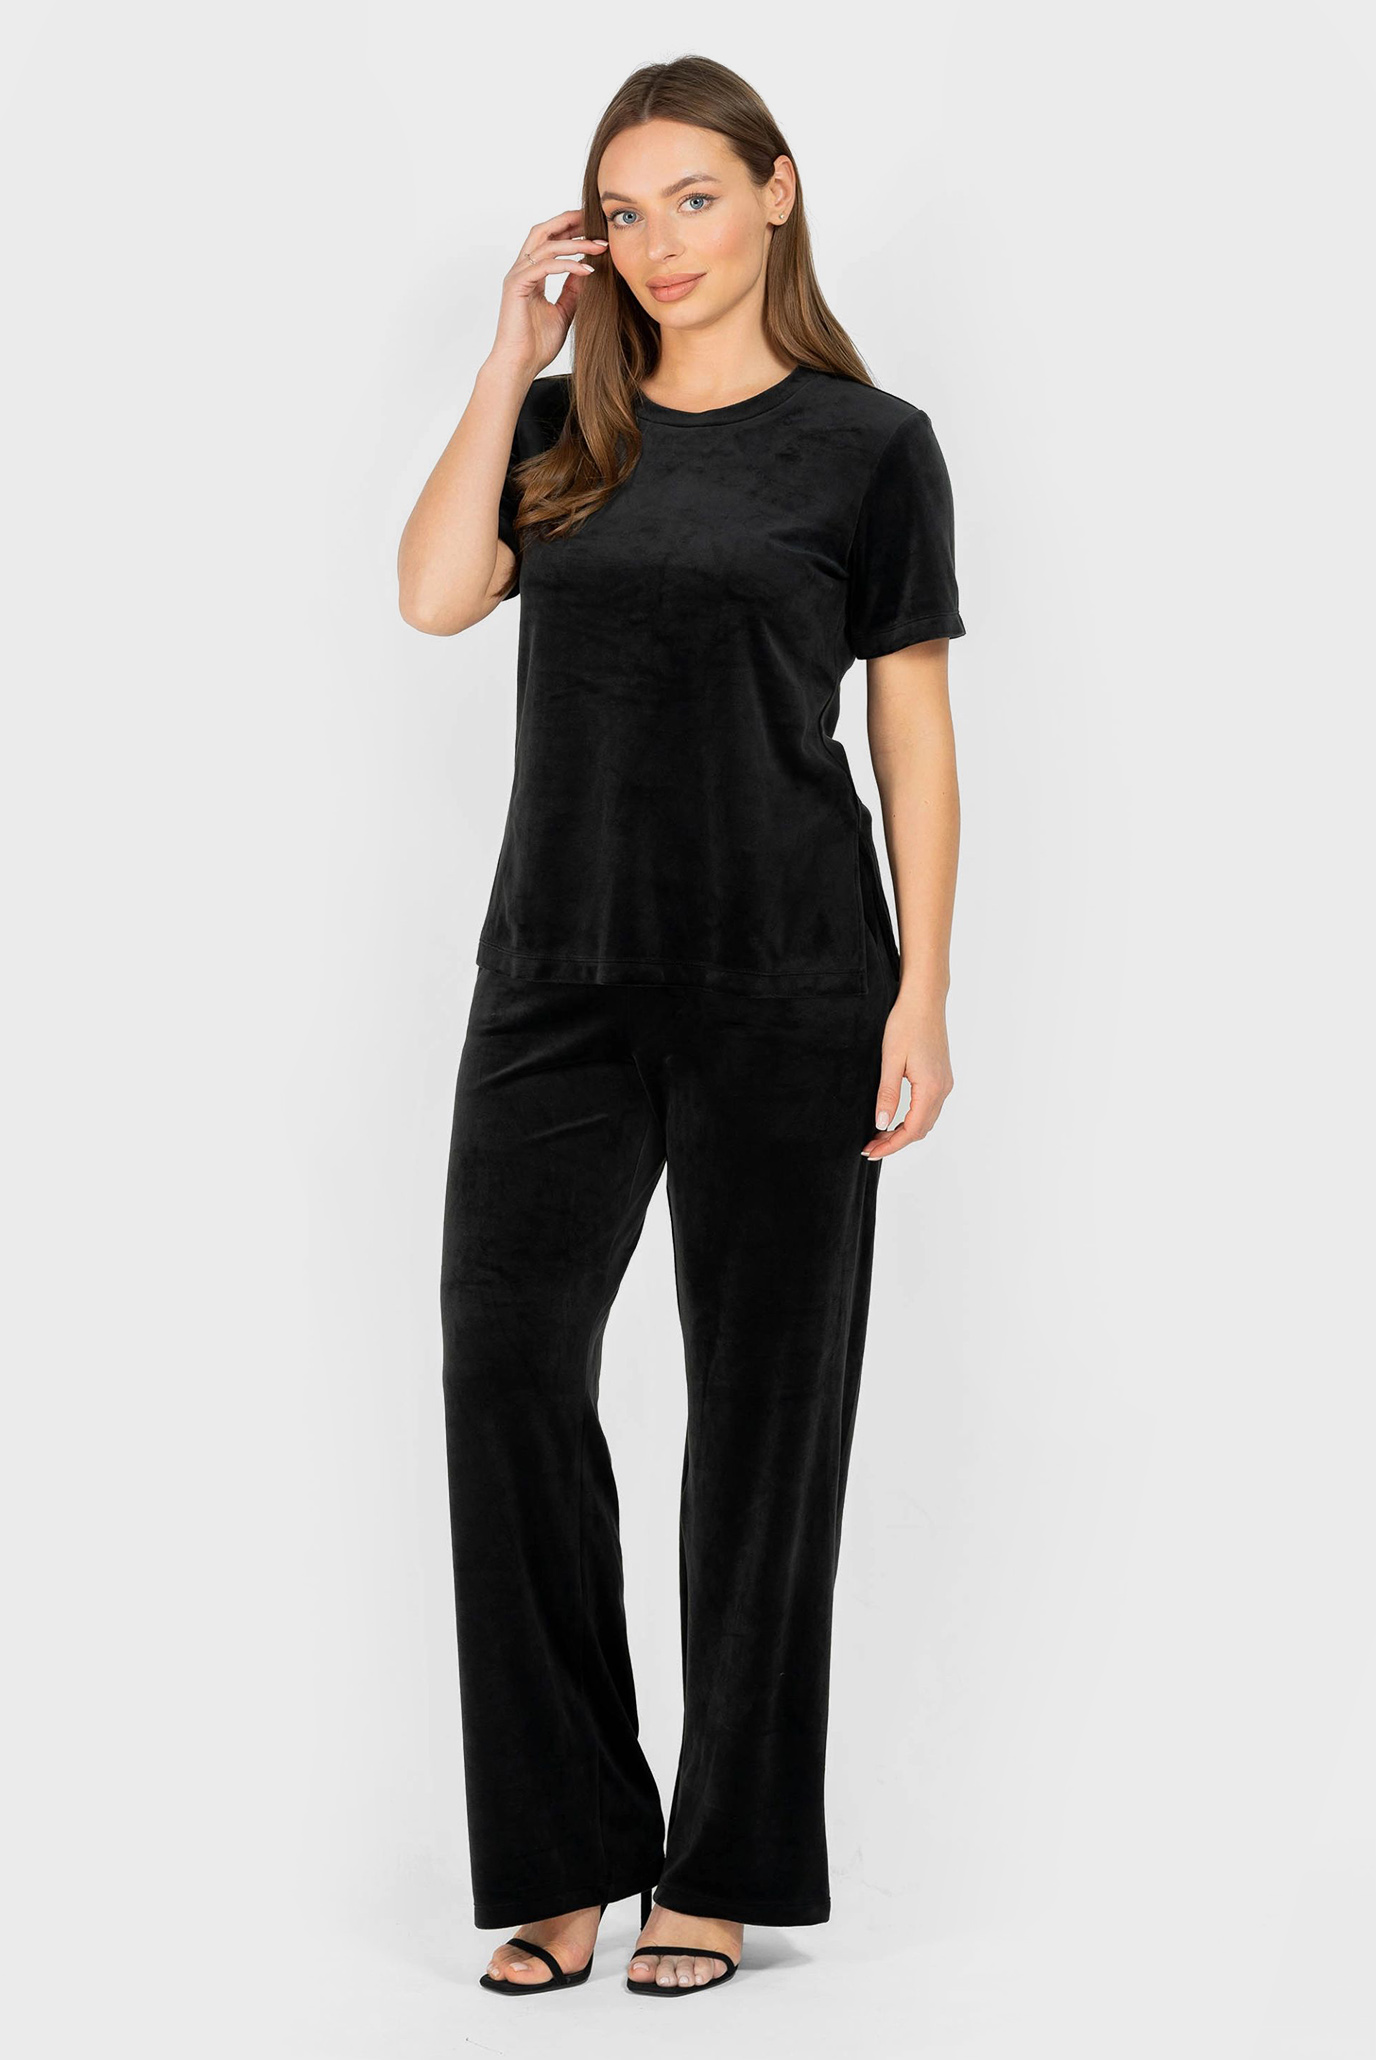 Жіночий чорний велюровий комплект одягу (топ, брюки) 1